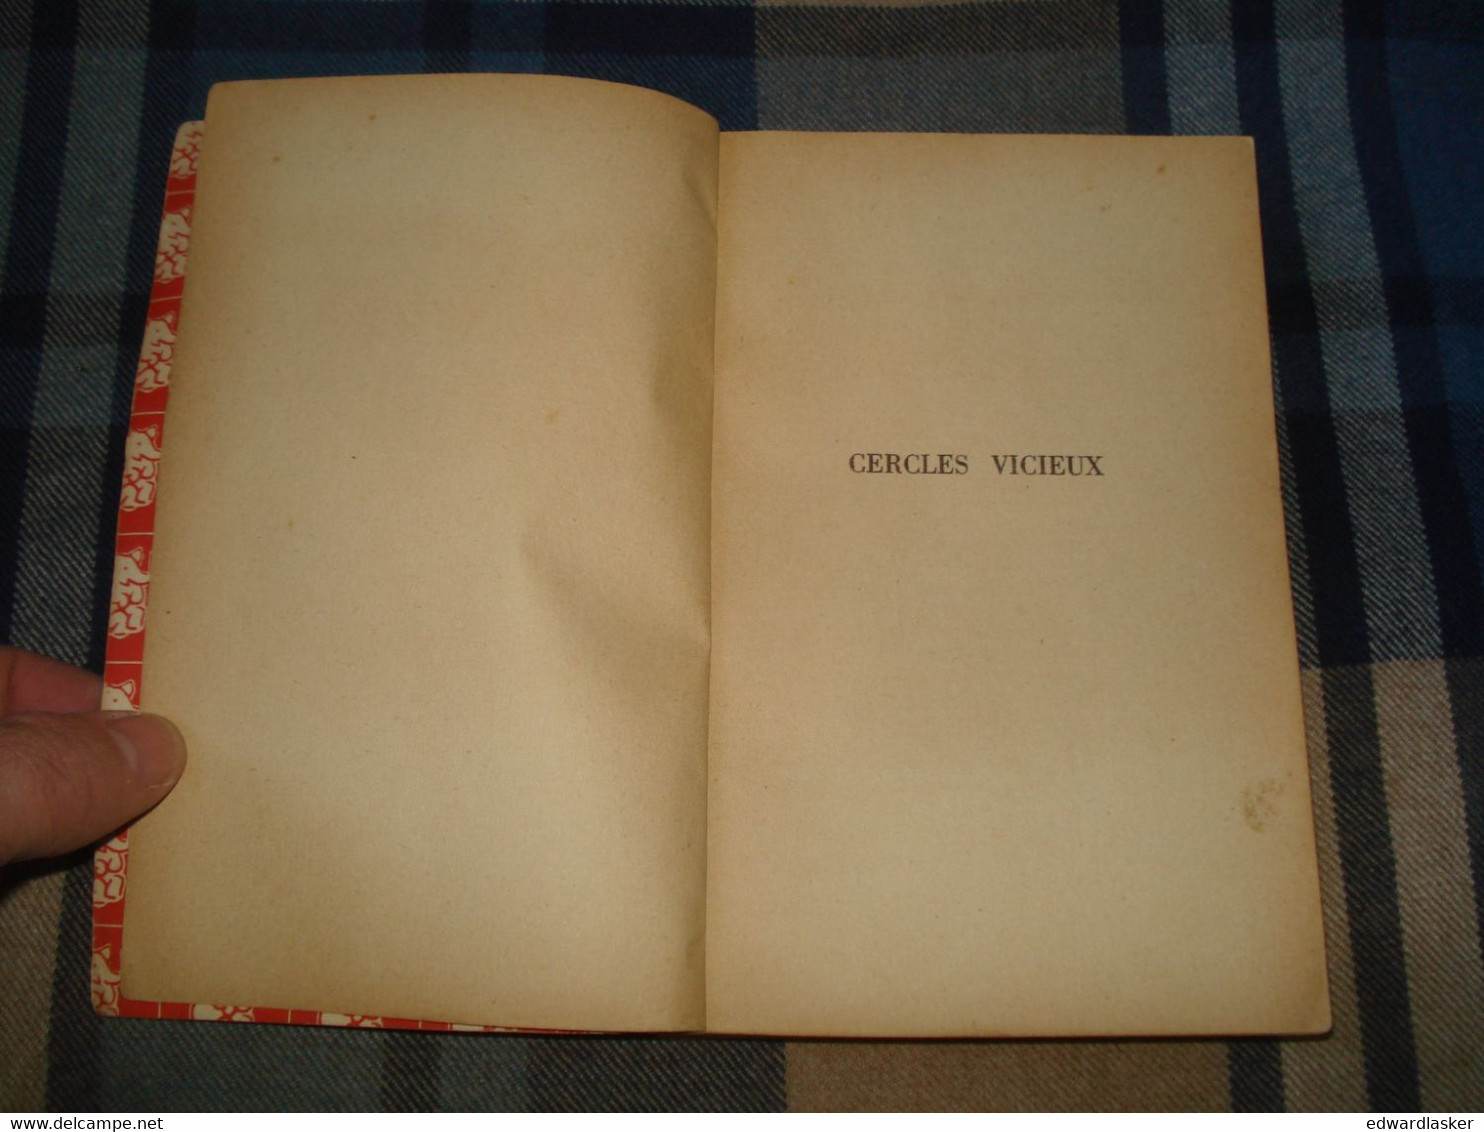 Un MYSTERE N°13 : CERCLES VICIEUX /Erle Stanley GARDNER - Octobre 1950 [2] - Presses De La Cité